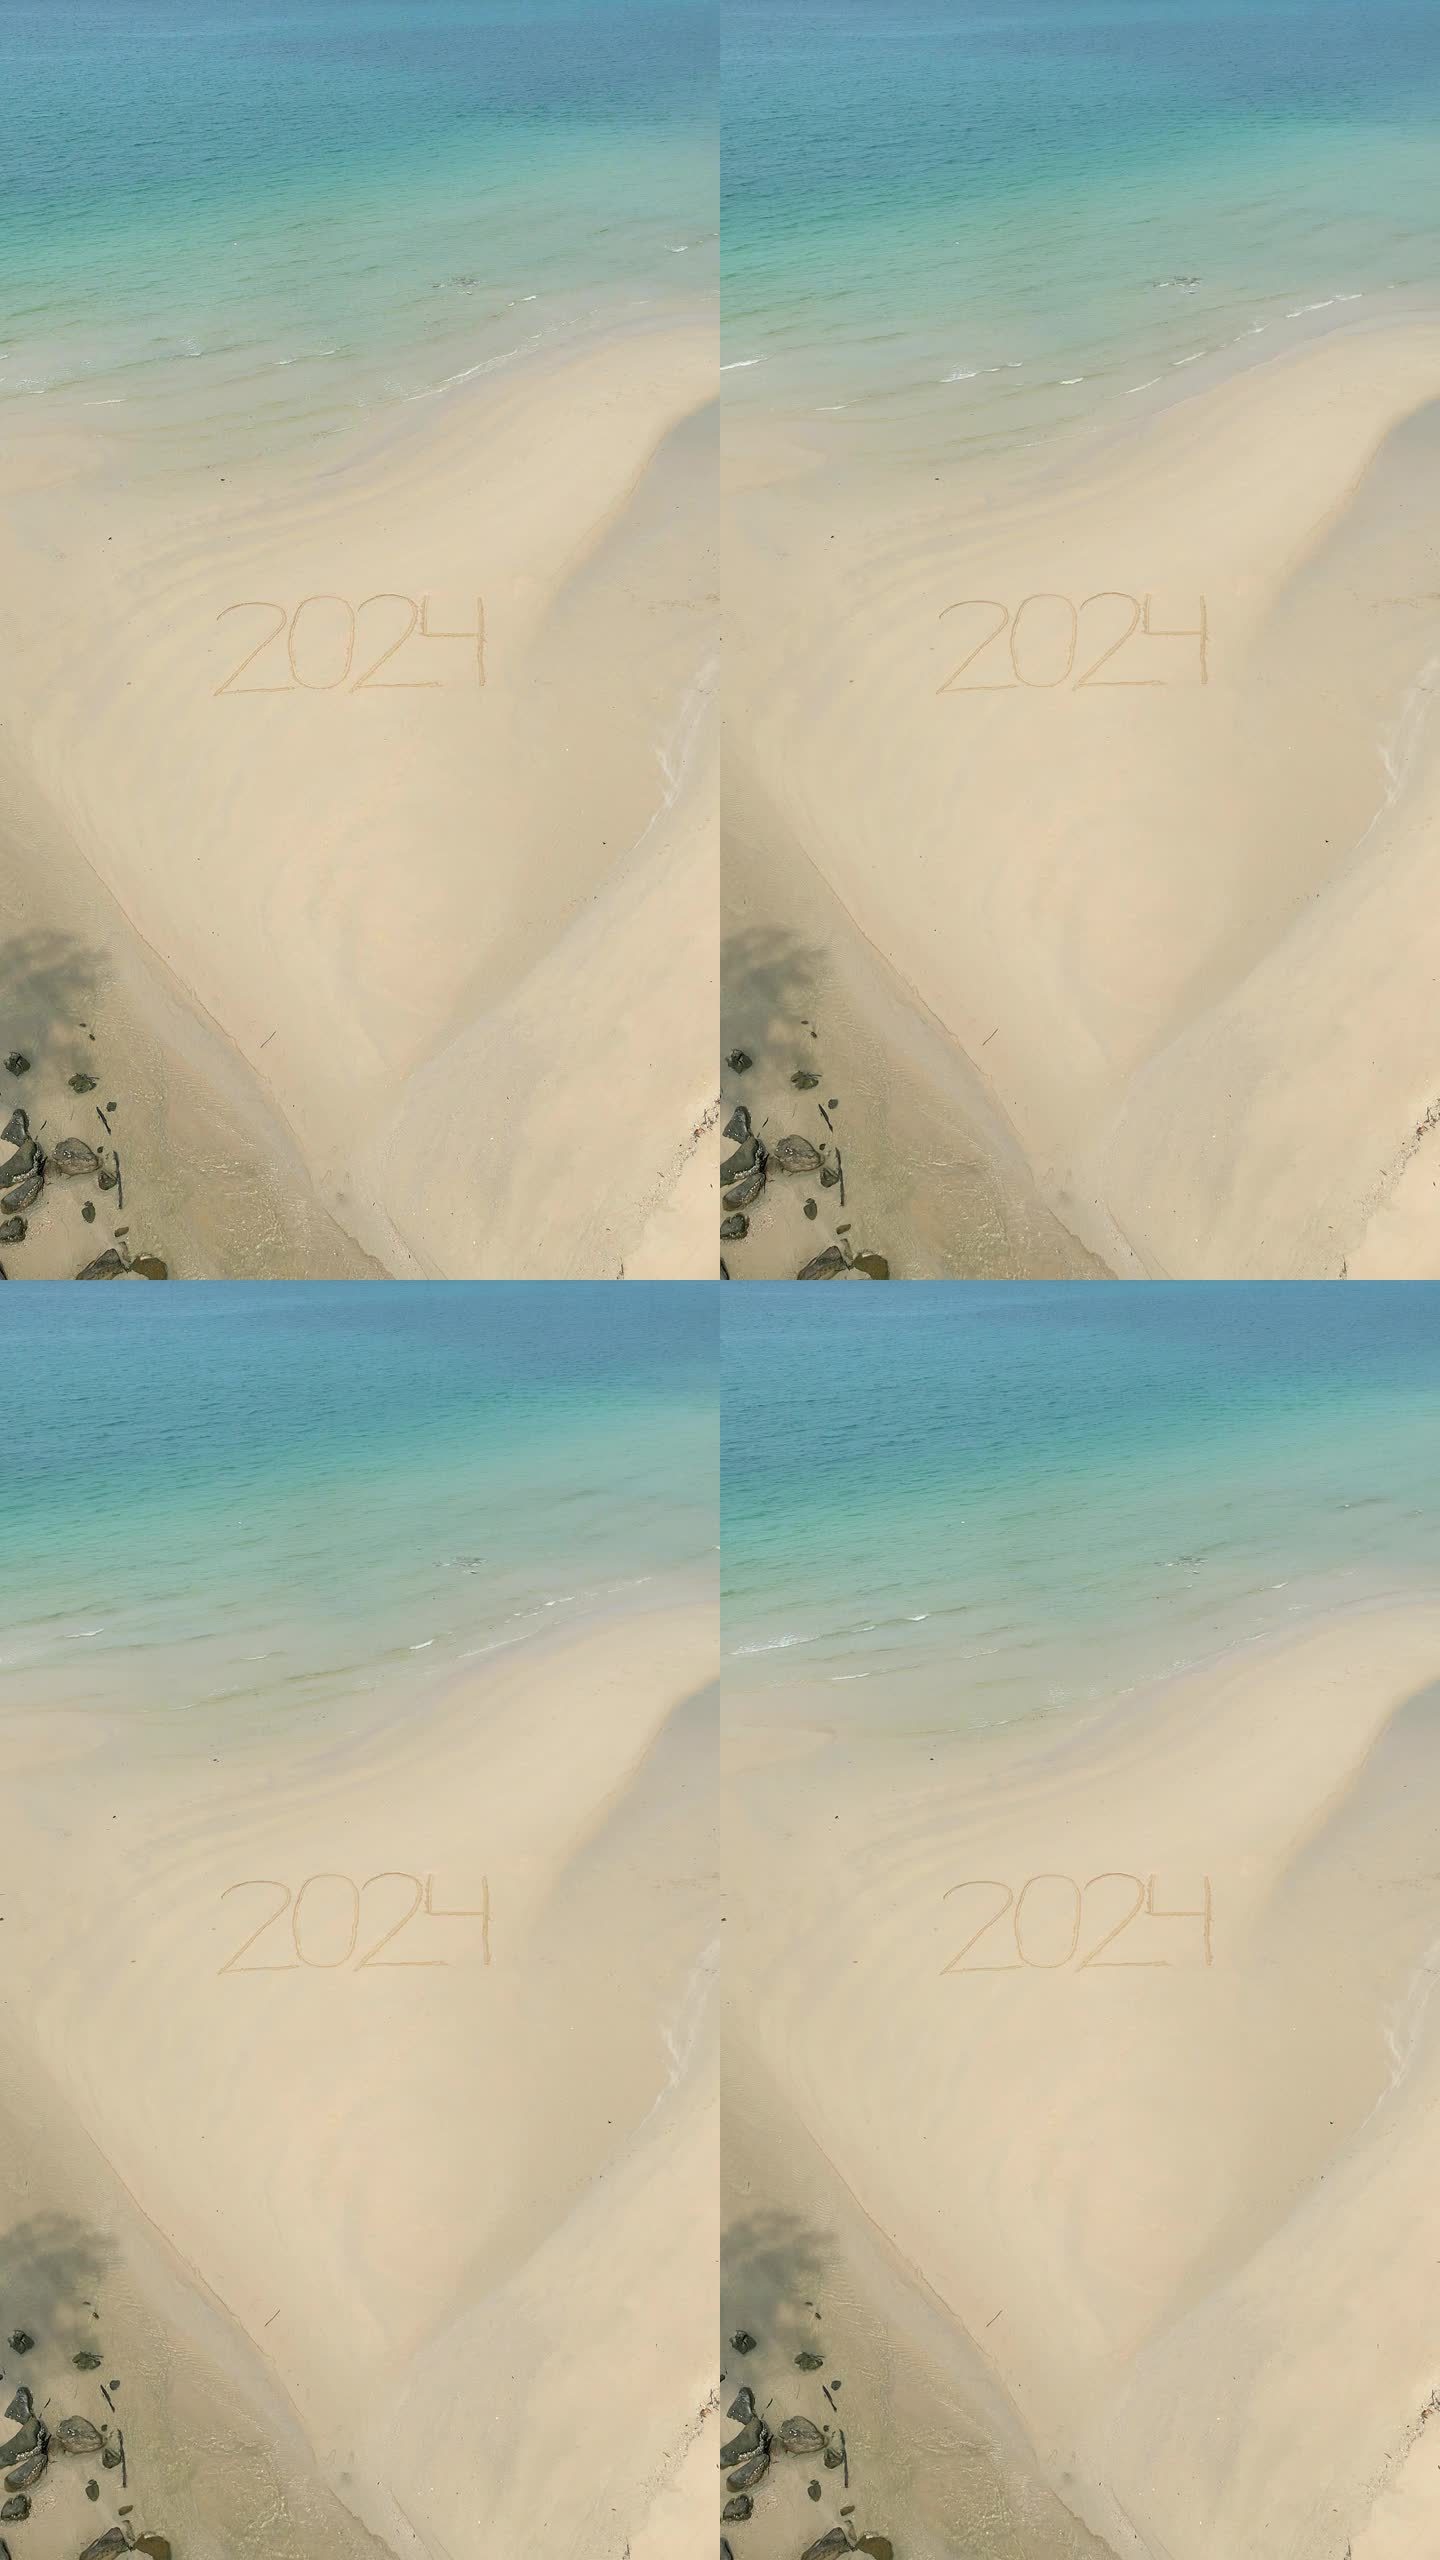 2024写在沙滩上。进入2024年的概念，2024年的海滩度假